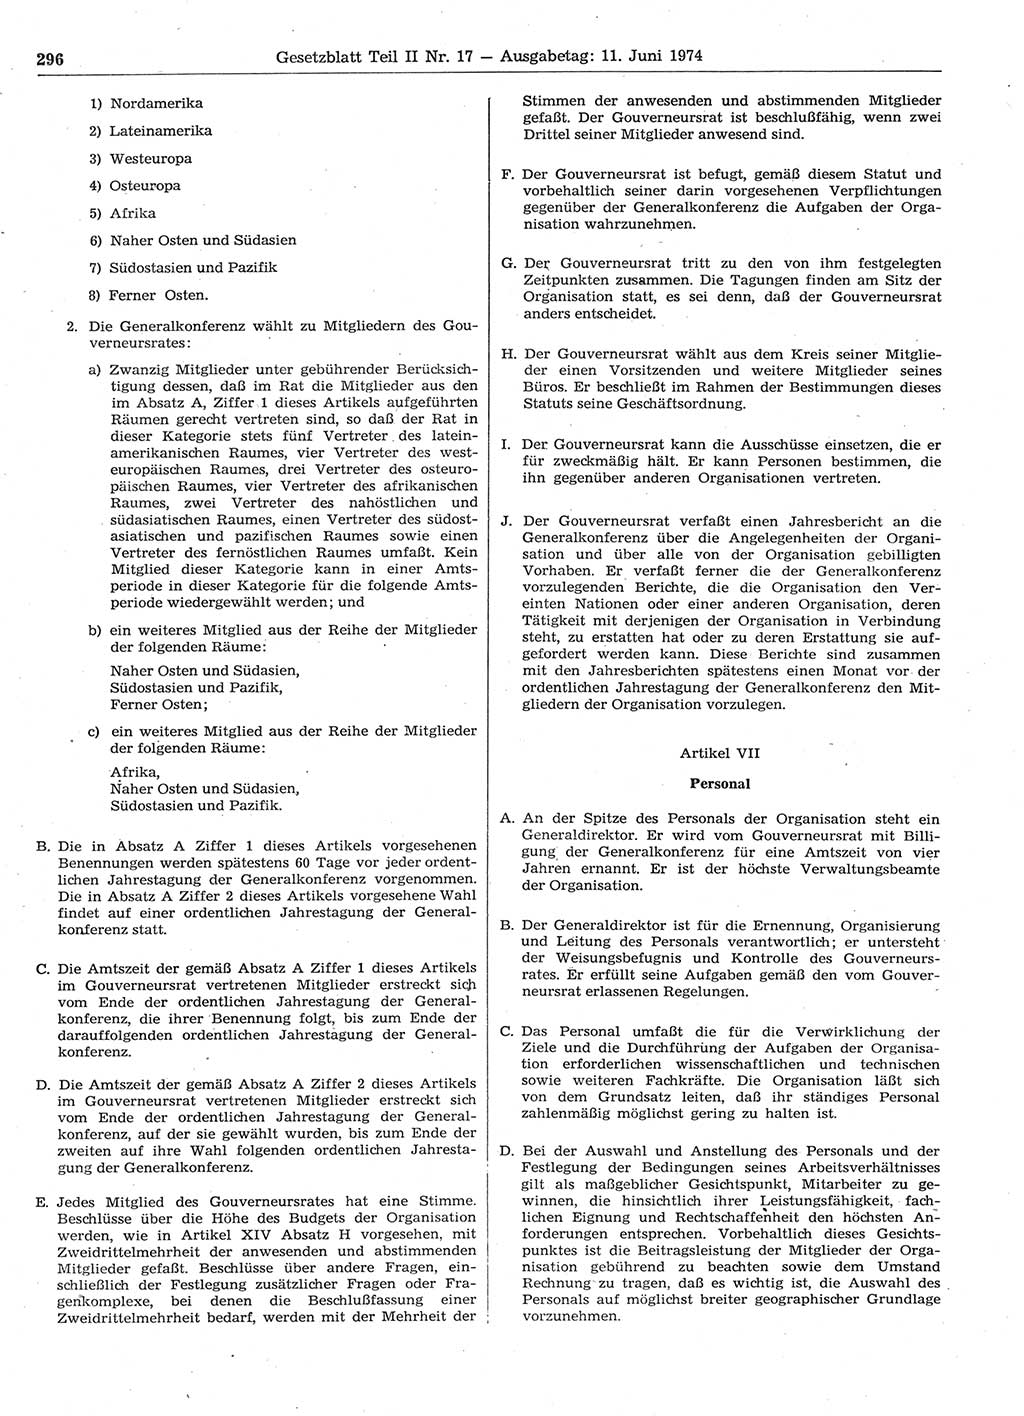 Gesetzblatt (GBl.) der Deutschen Demokratischen Republik (DDR) Teil ⅠⅠ 1974, Seite 296 (GBl. DDR ⅠⅠ 1974, S. 296)